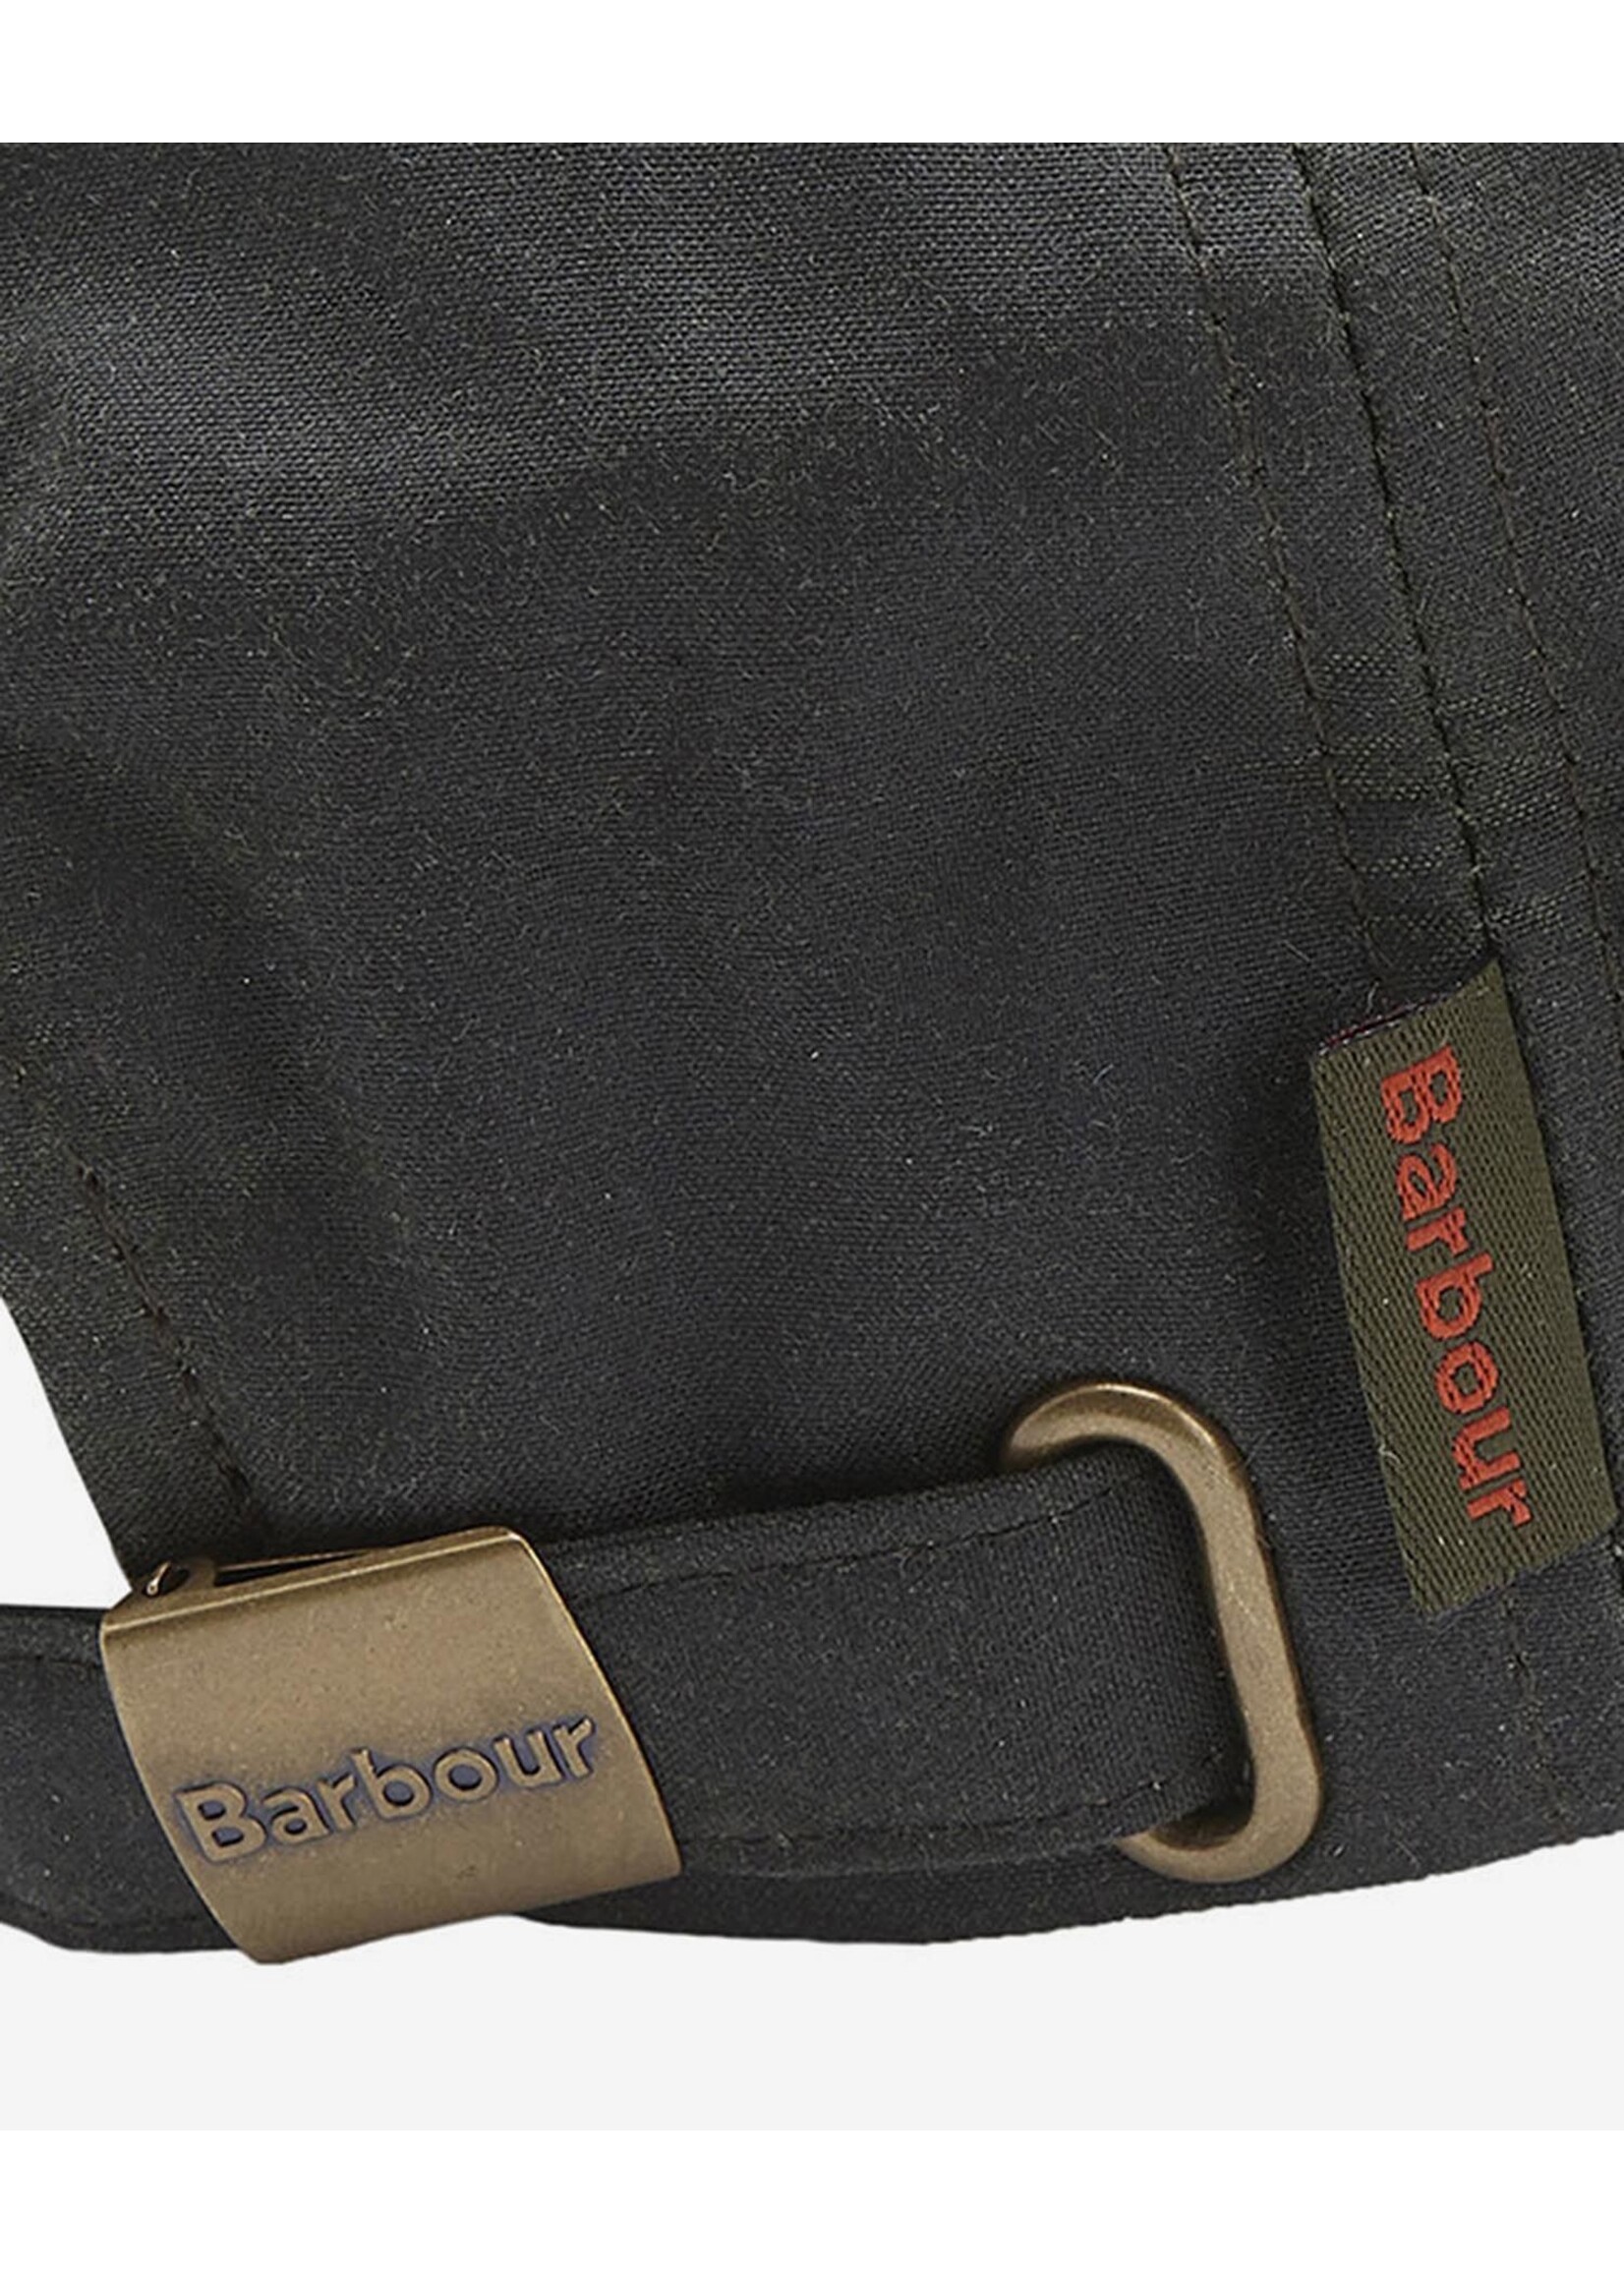 Barbour Wax Sport Cap Navy - Terraces Menswear